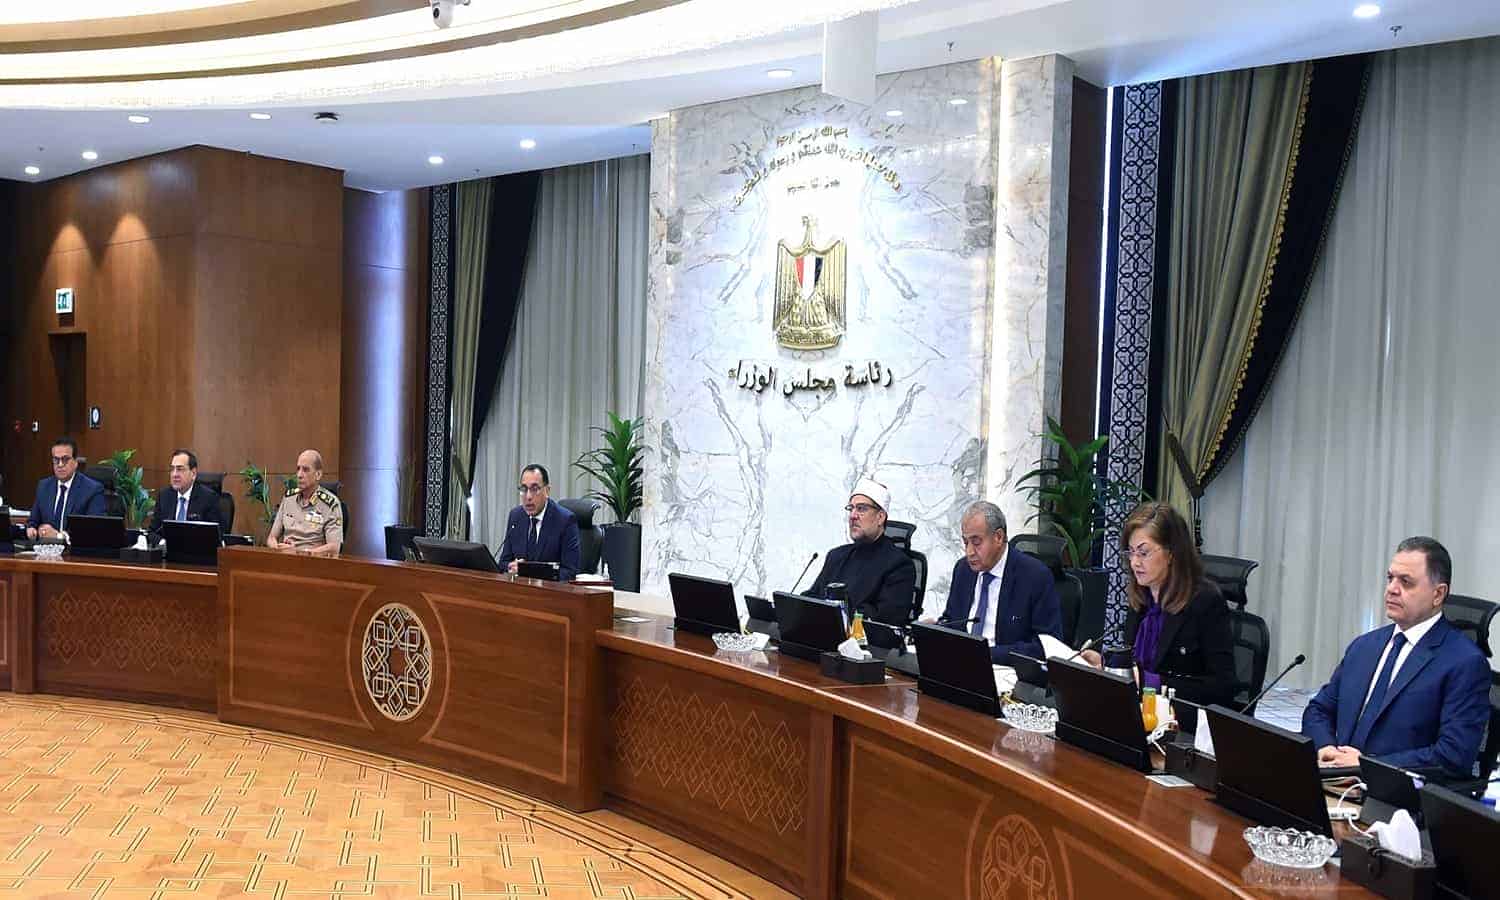 مجلس الوزراء يوافق على إقامة 56 مشروعًا لحياة كريمة في 11 محافظة